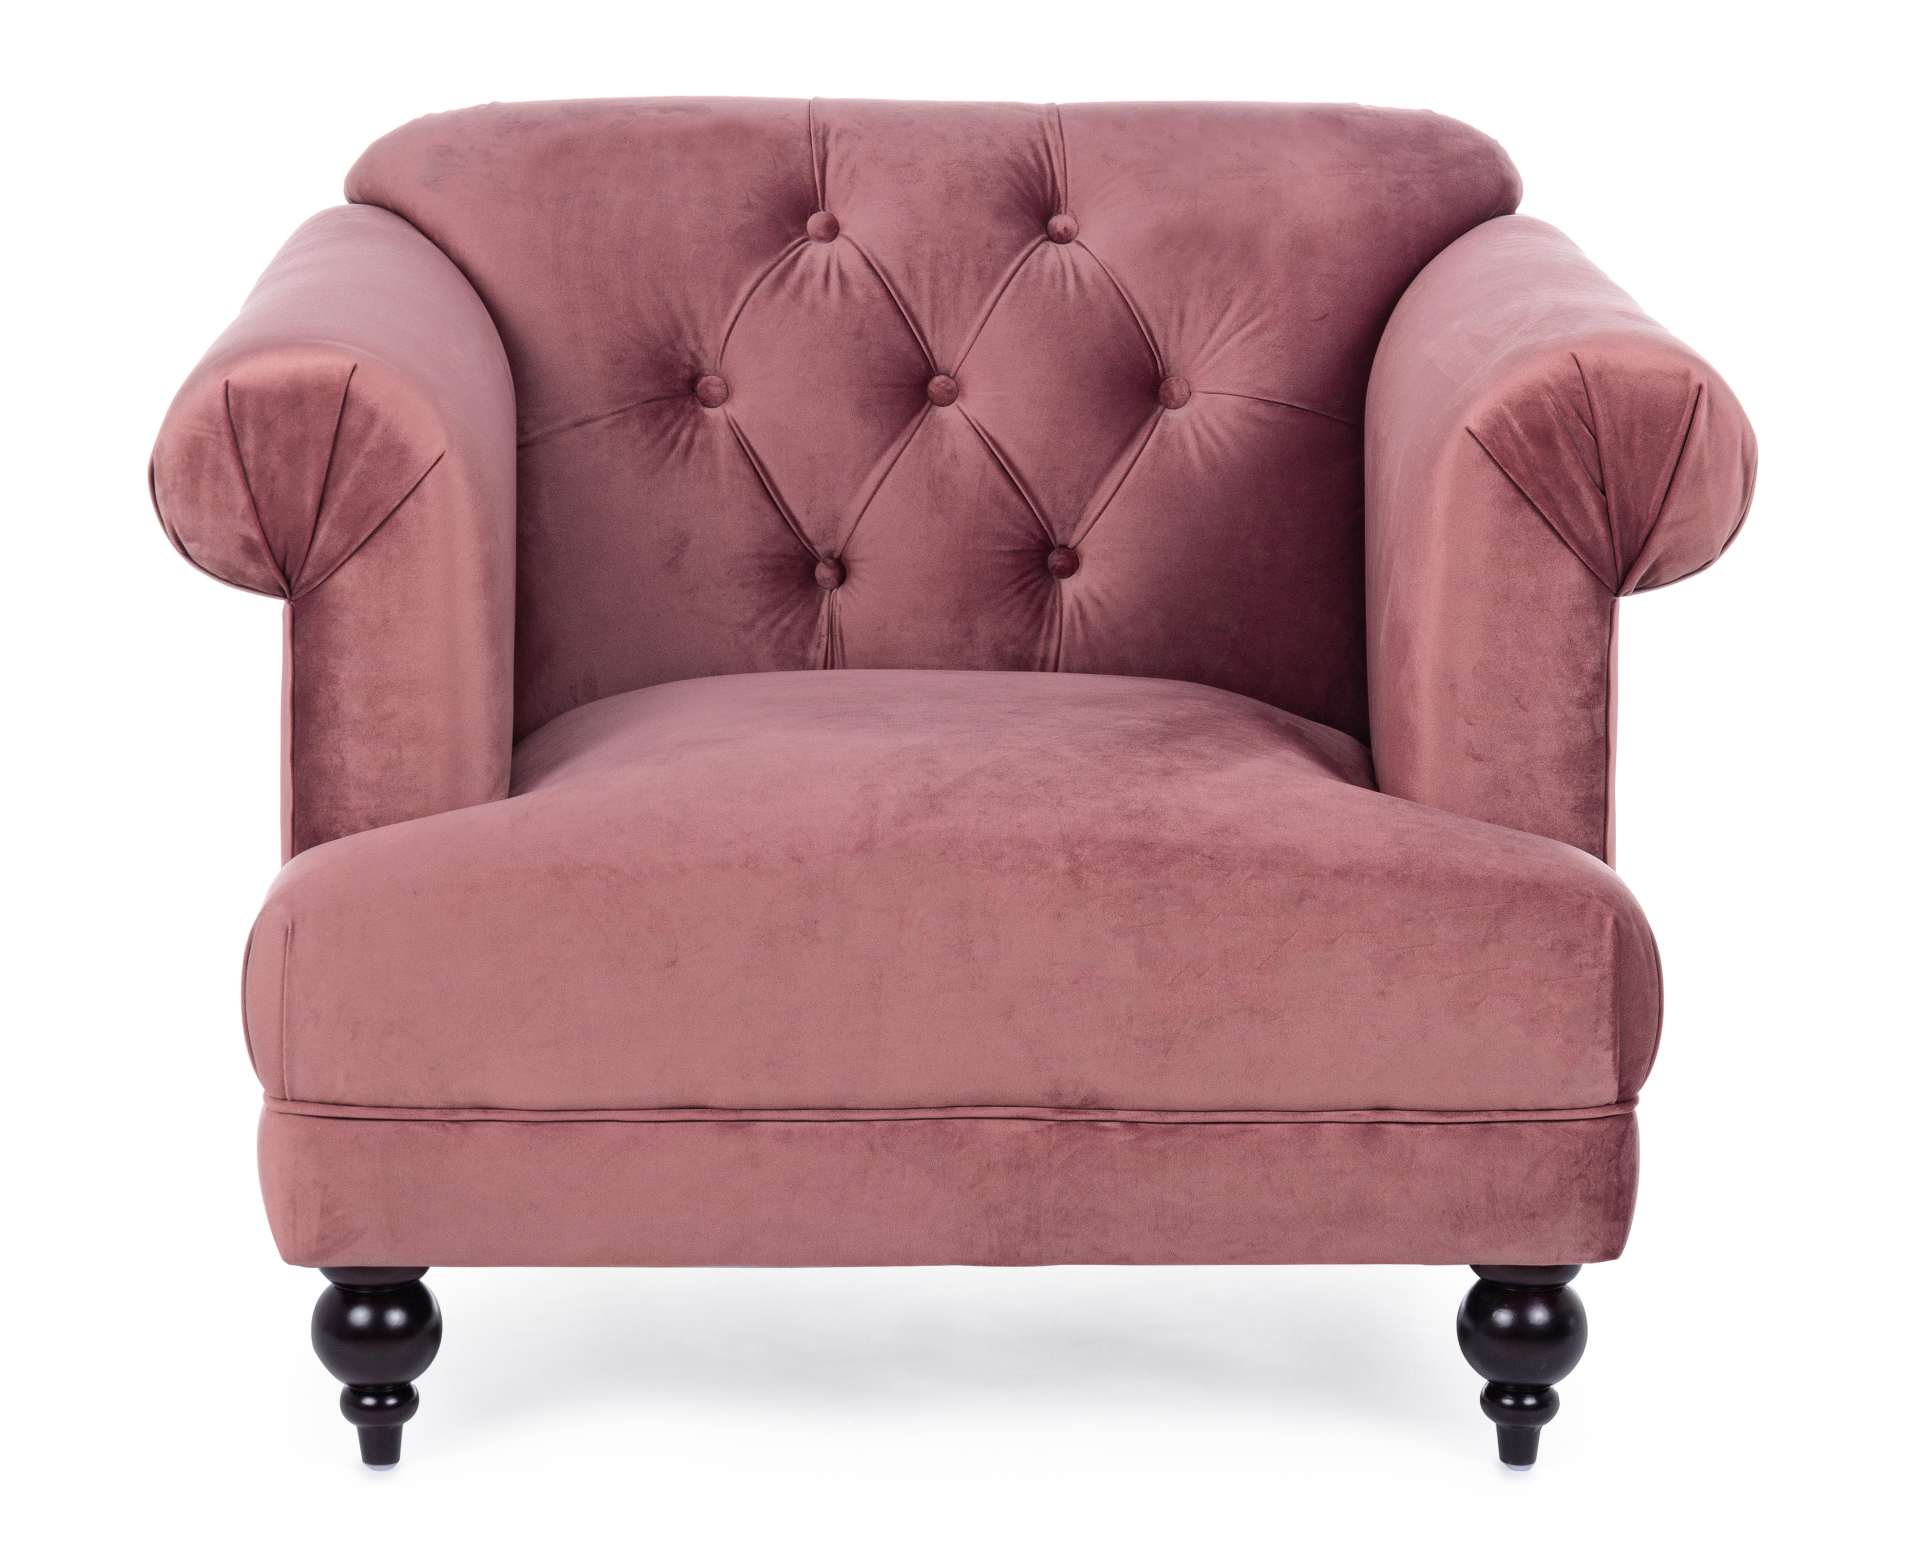 Der Sessel Blossom überzeugt mit seinem klassischen Design. Gefertigt wurde er aus Stoff in Samt-Optik, welcher einen altrosa Farbton besitzt. Das Gestell ist aus Kautschukholz und hat eine schwarze Farbe. Der Sessel besitzt eine Sitzhöhe von 44 cm. Die B